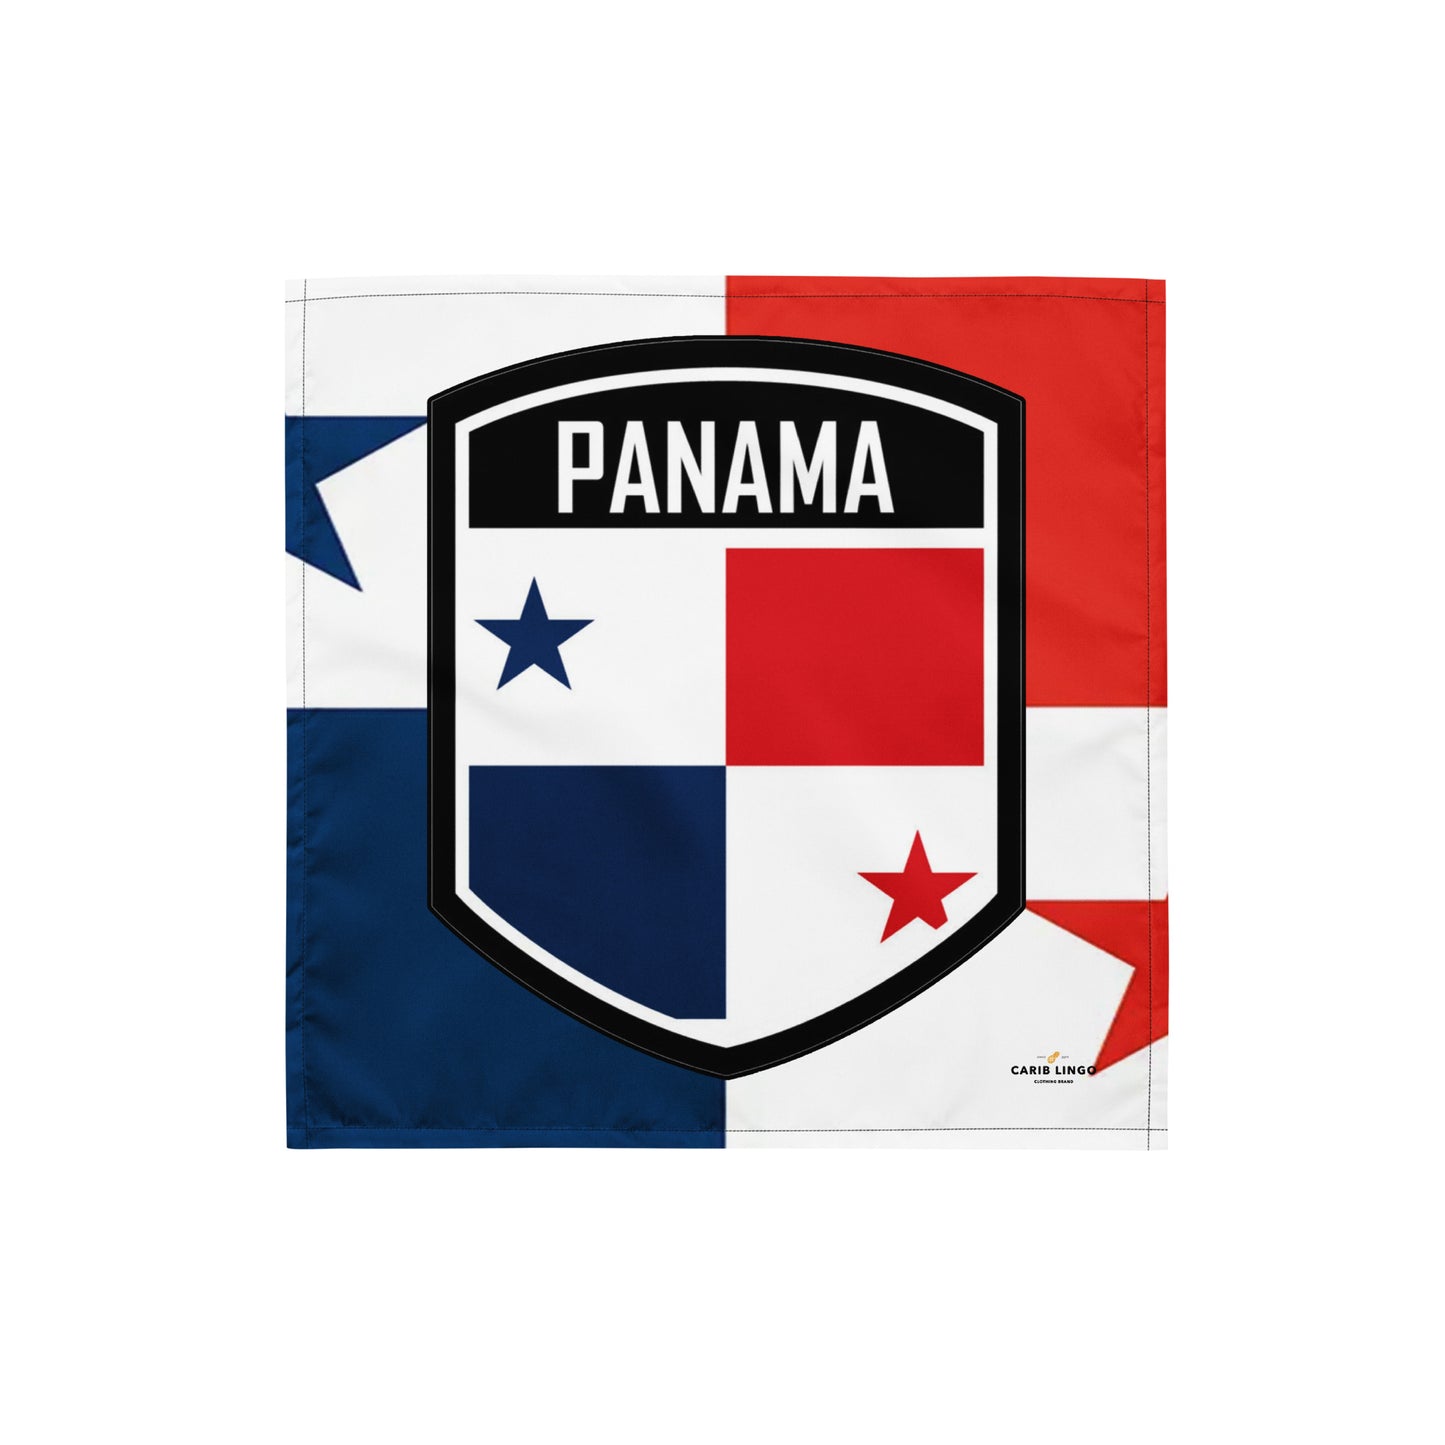 Panama bandana